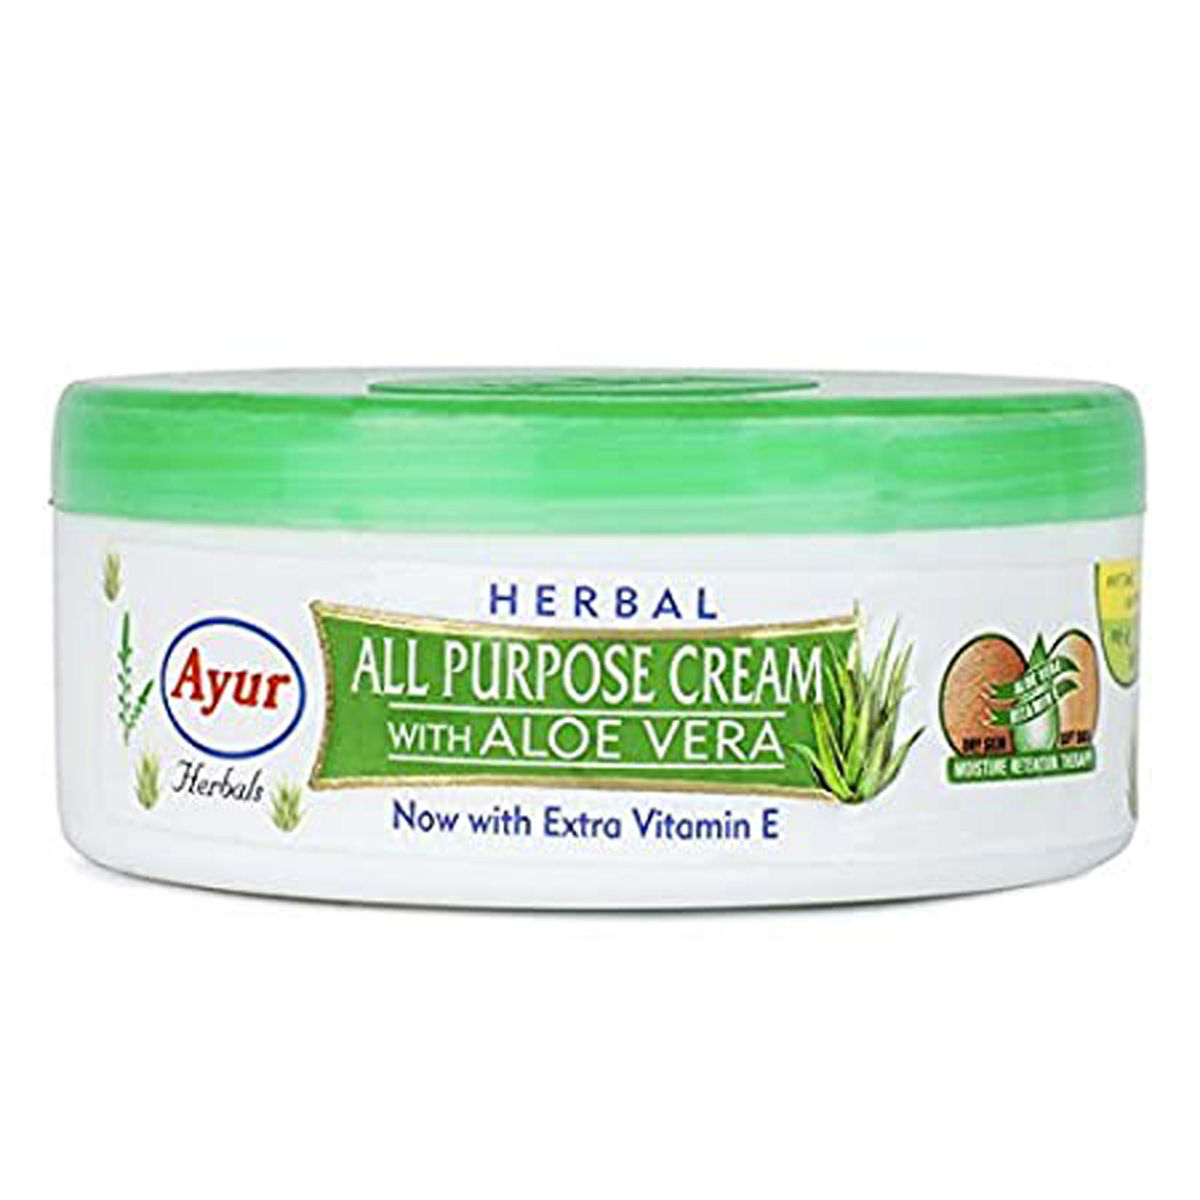 Buy Ayur Herbal All Purpose Cream With Aloe Vera, 200 ml Online